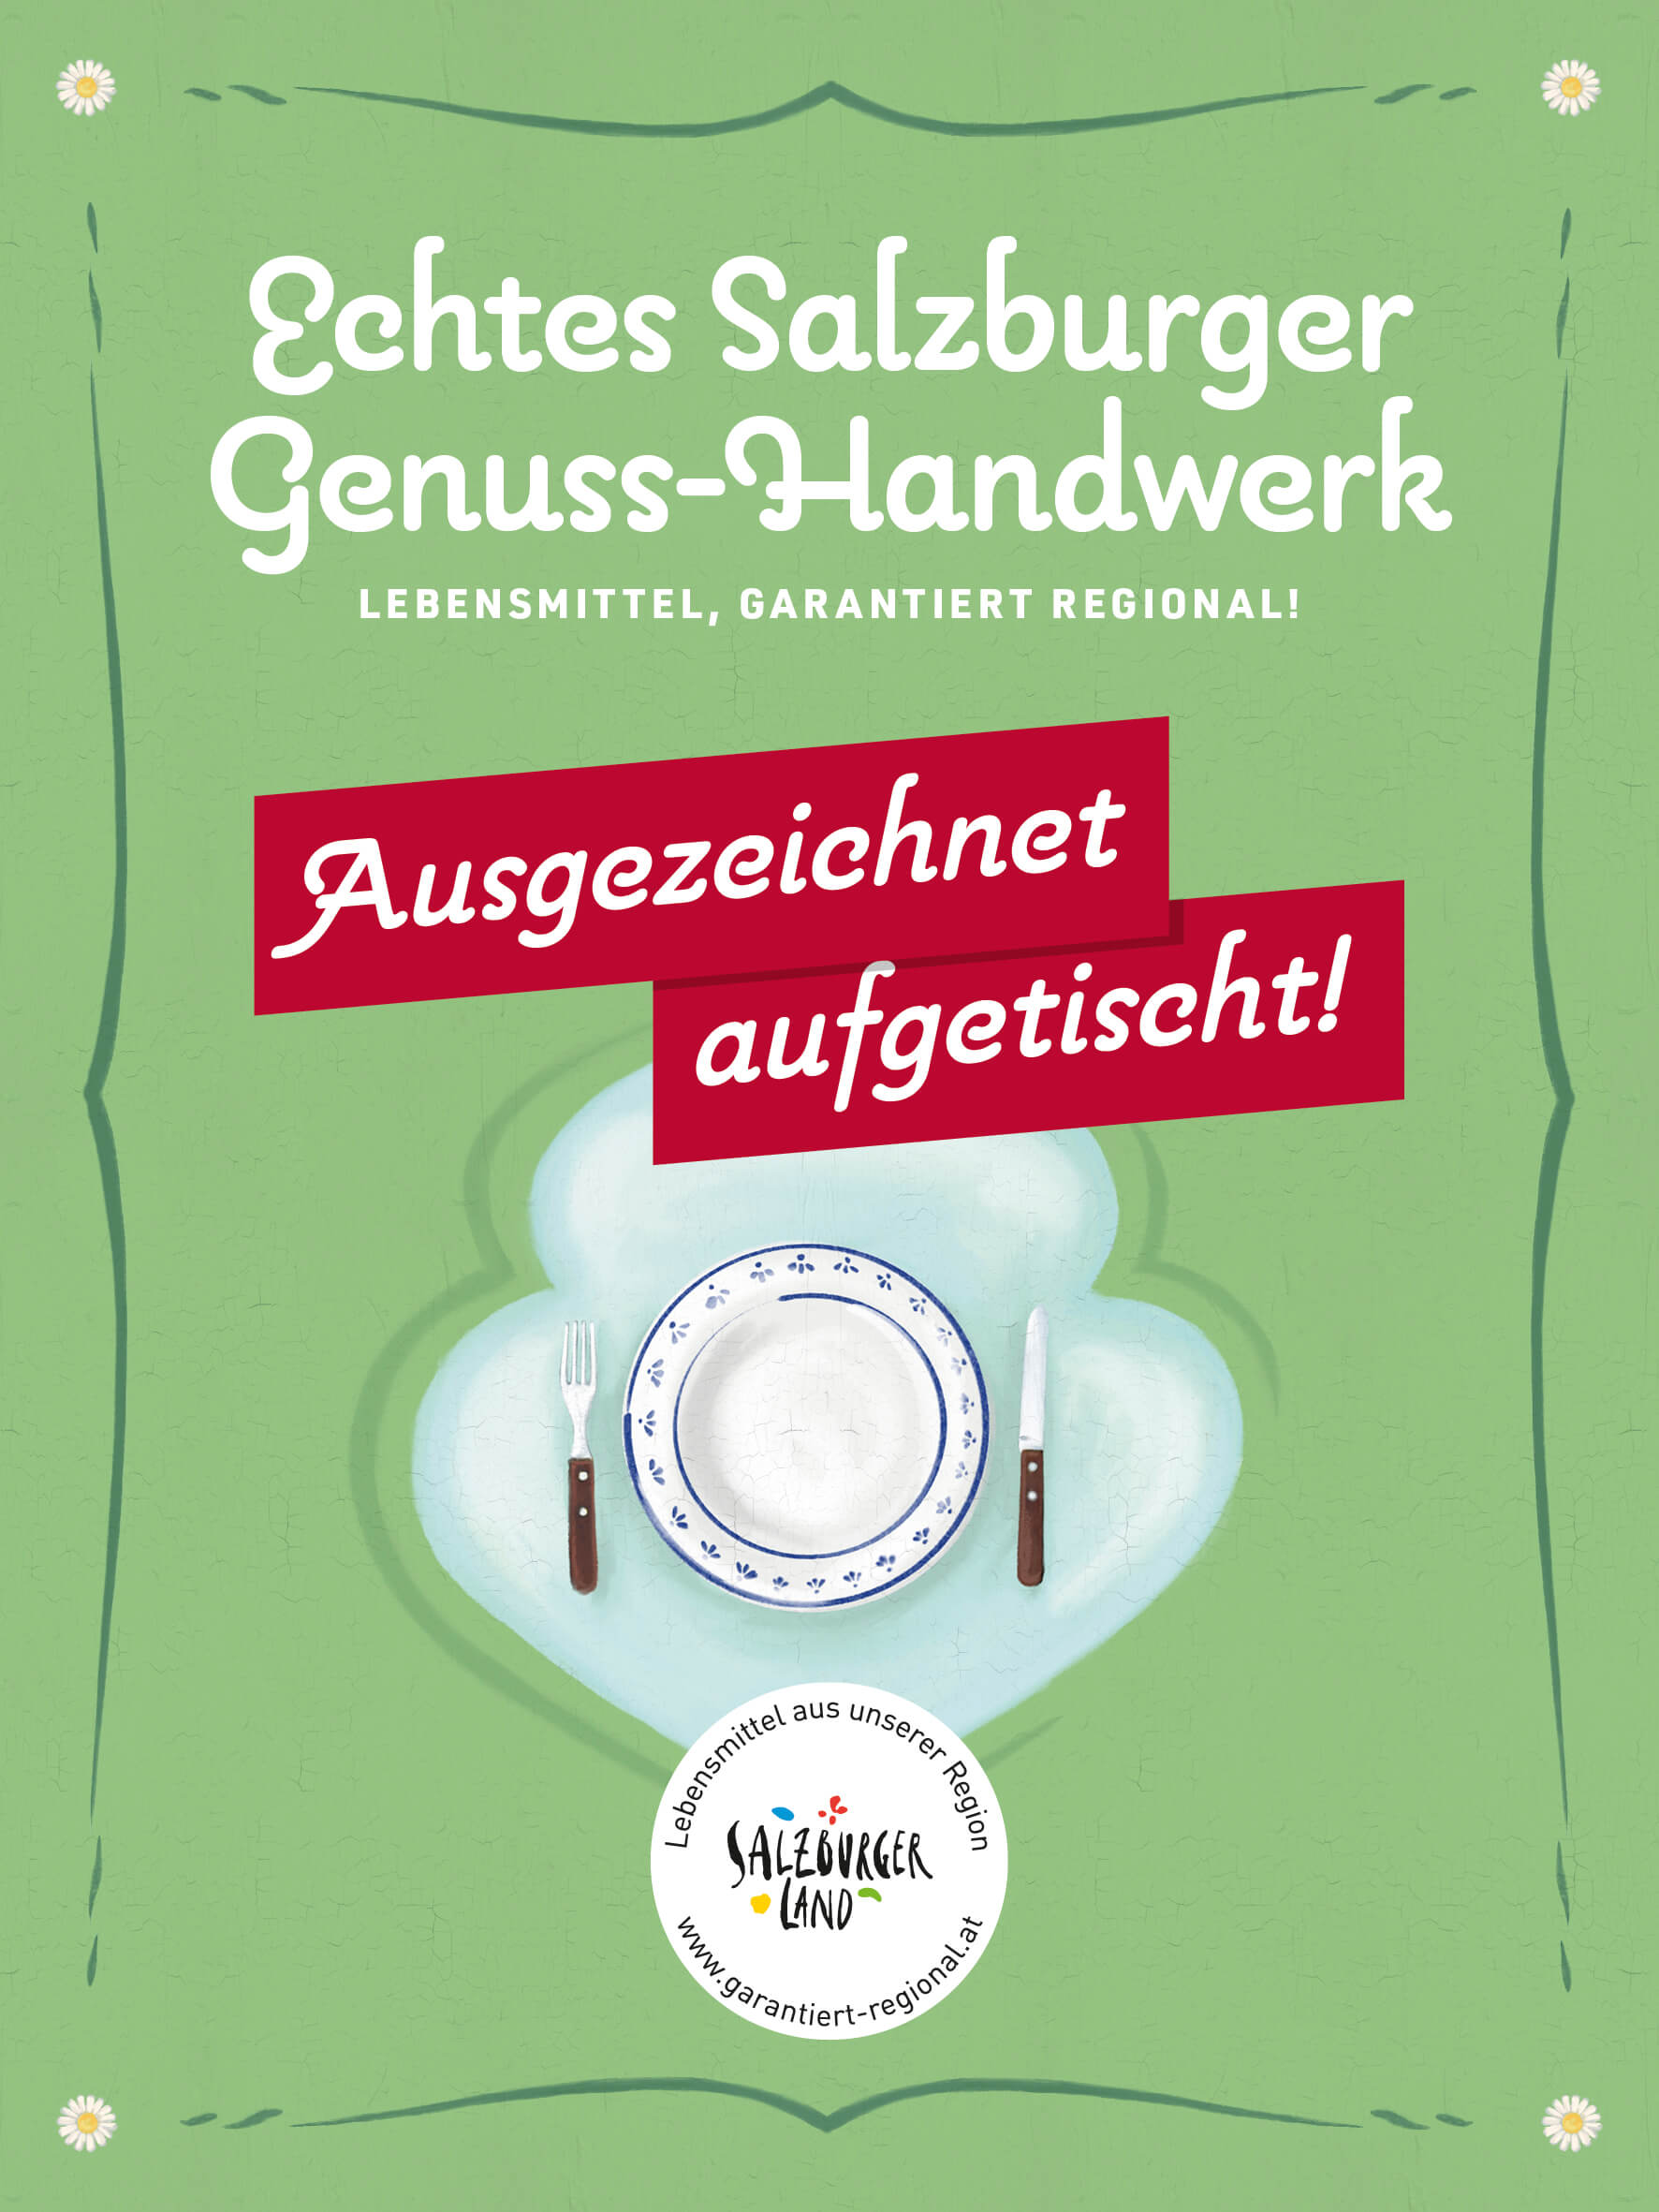 Wirtshaus Schweizerhof im Hotel Germania bei Salzburg schmeckt